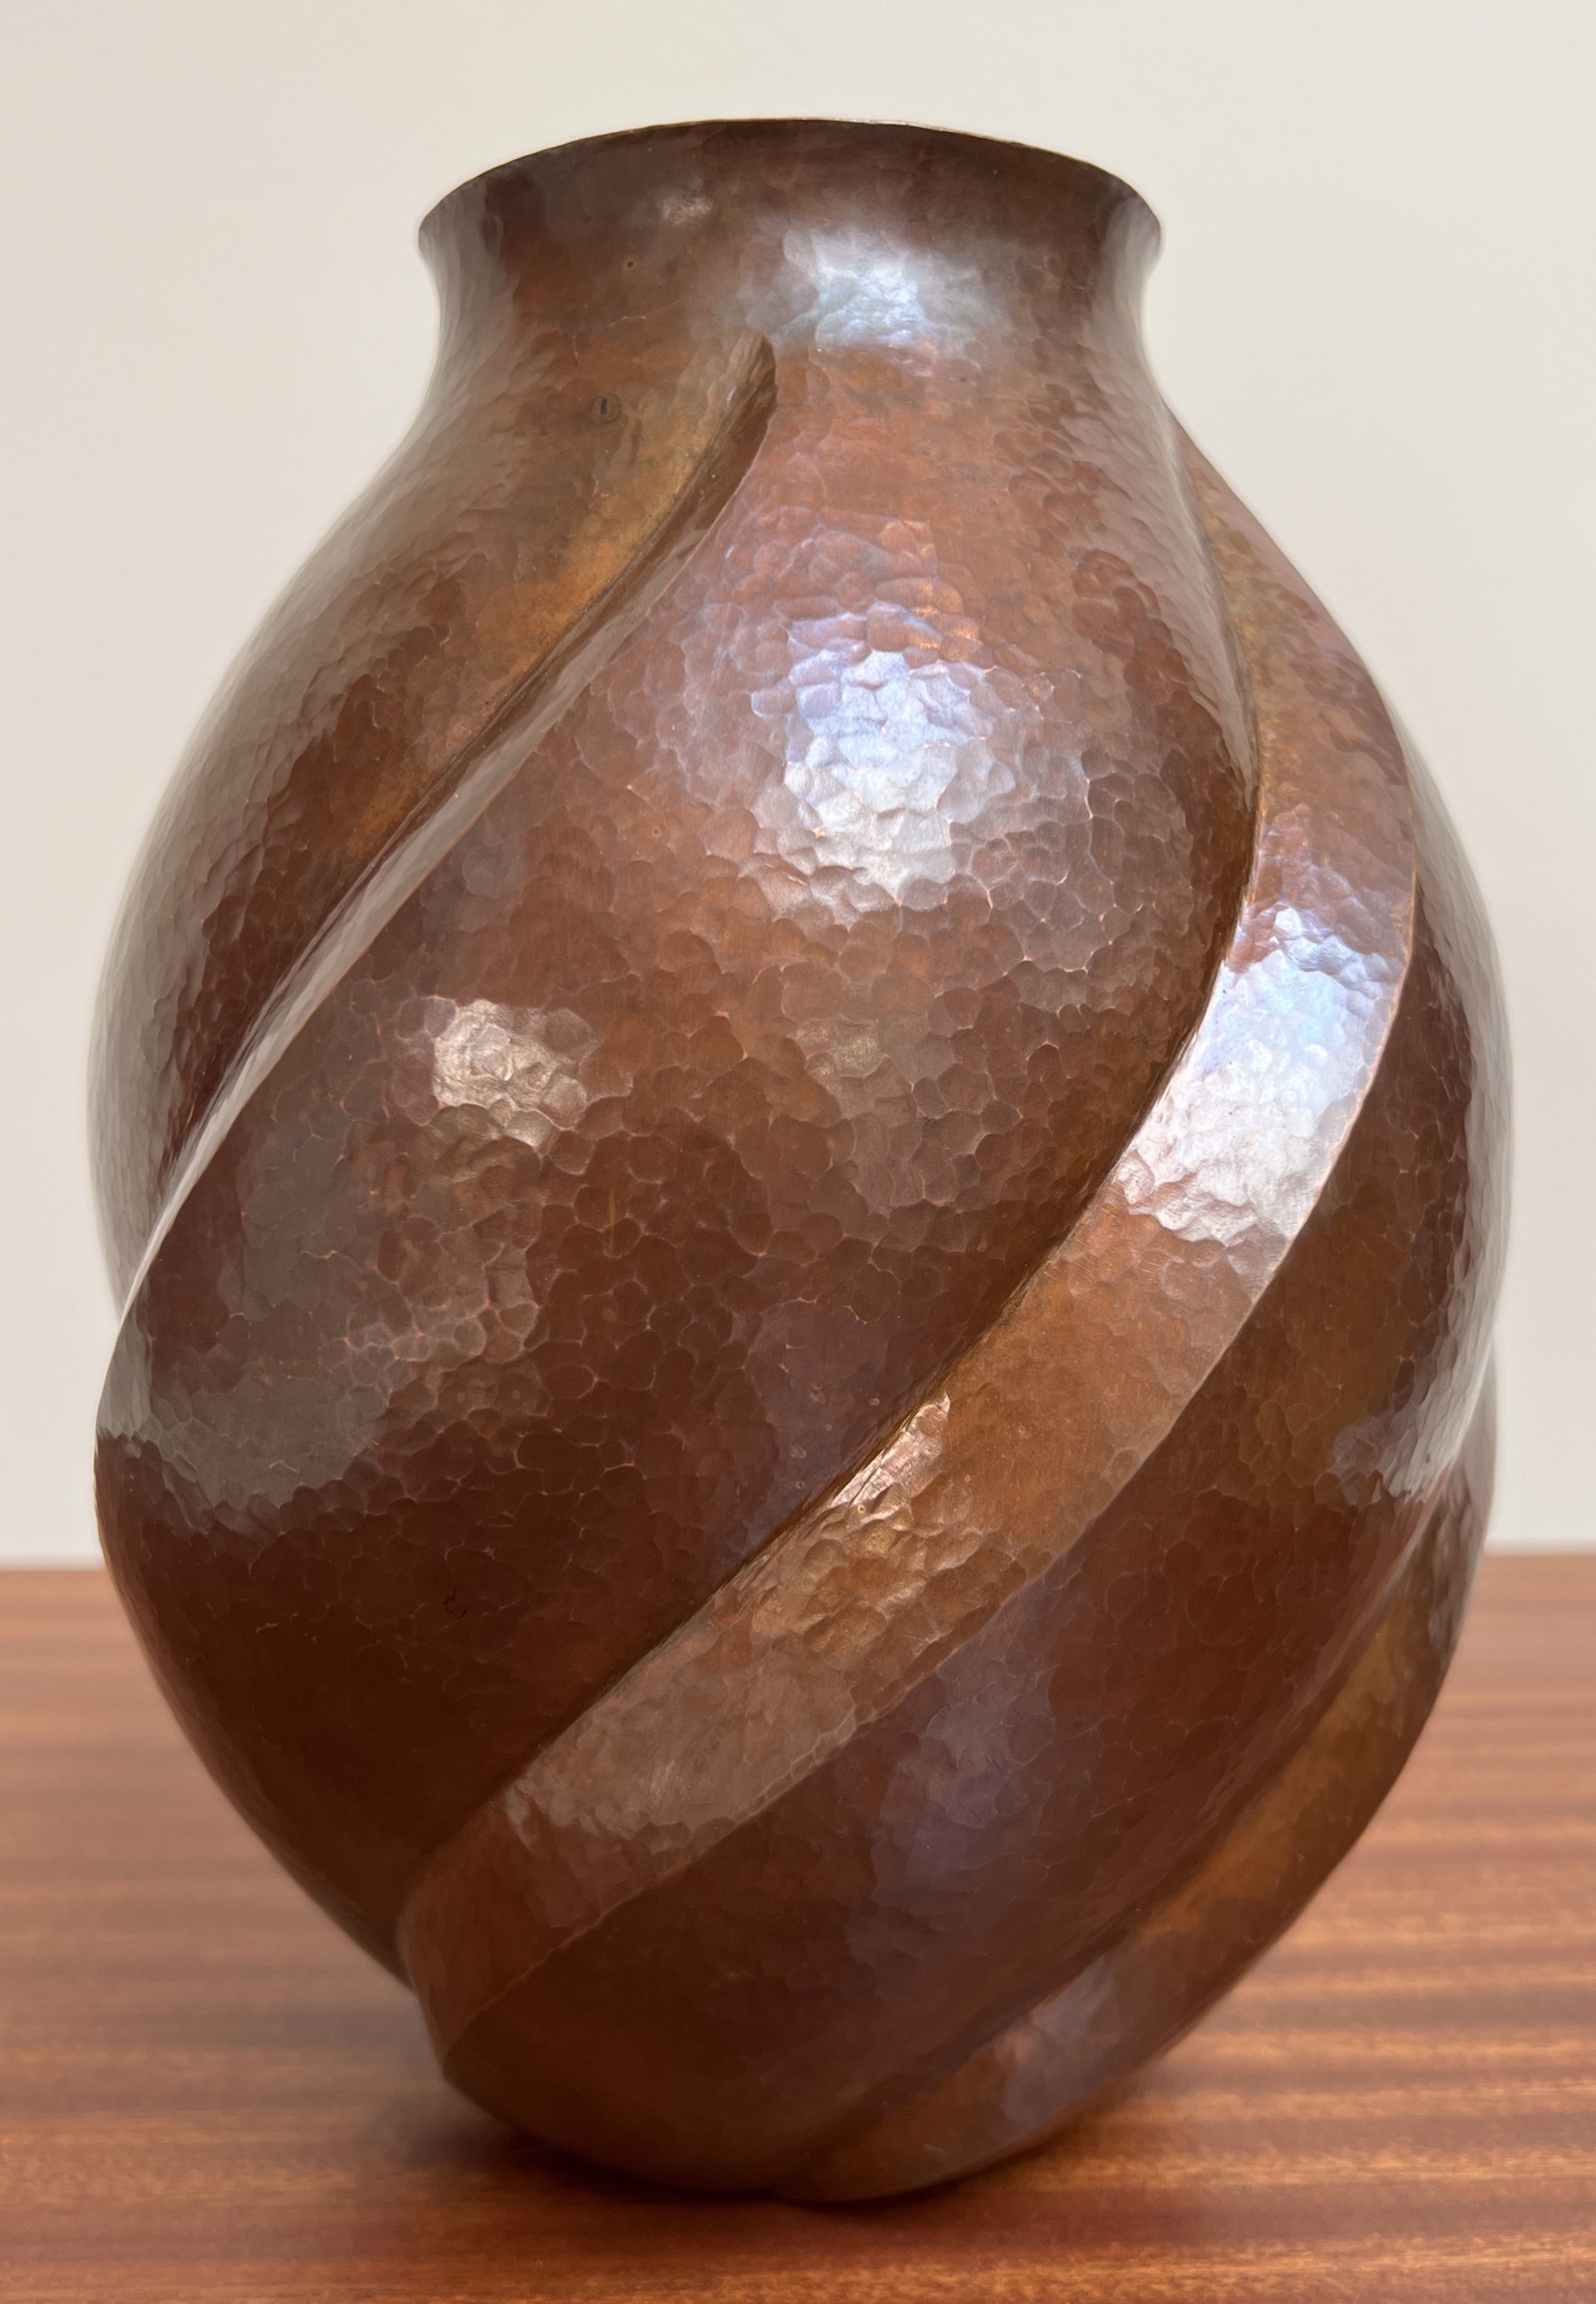 Copper Vessel 1 by Jose German Punzo Nuñez